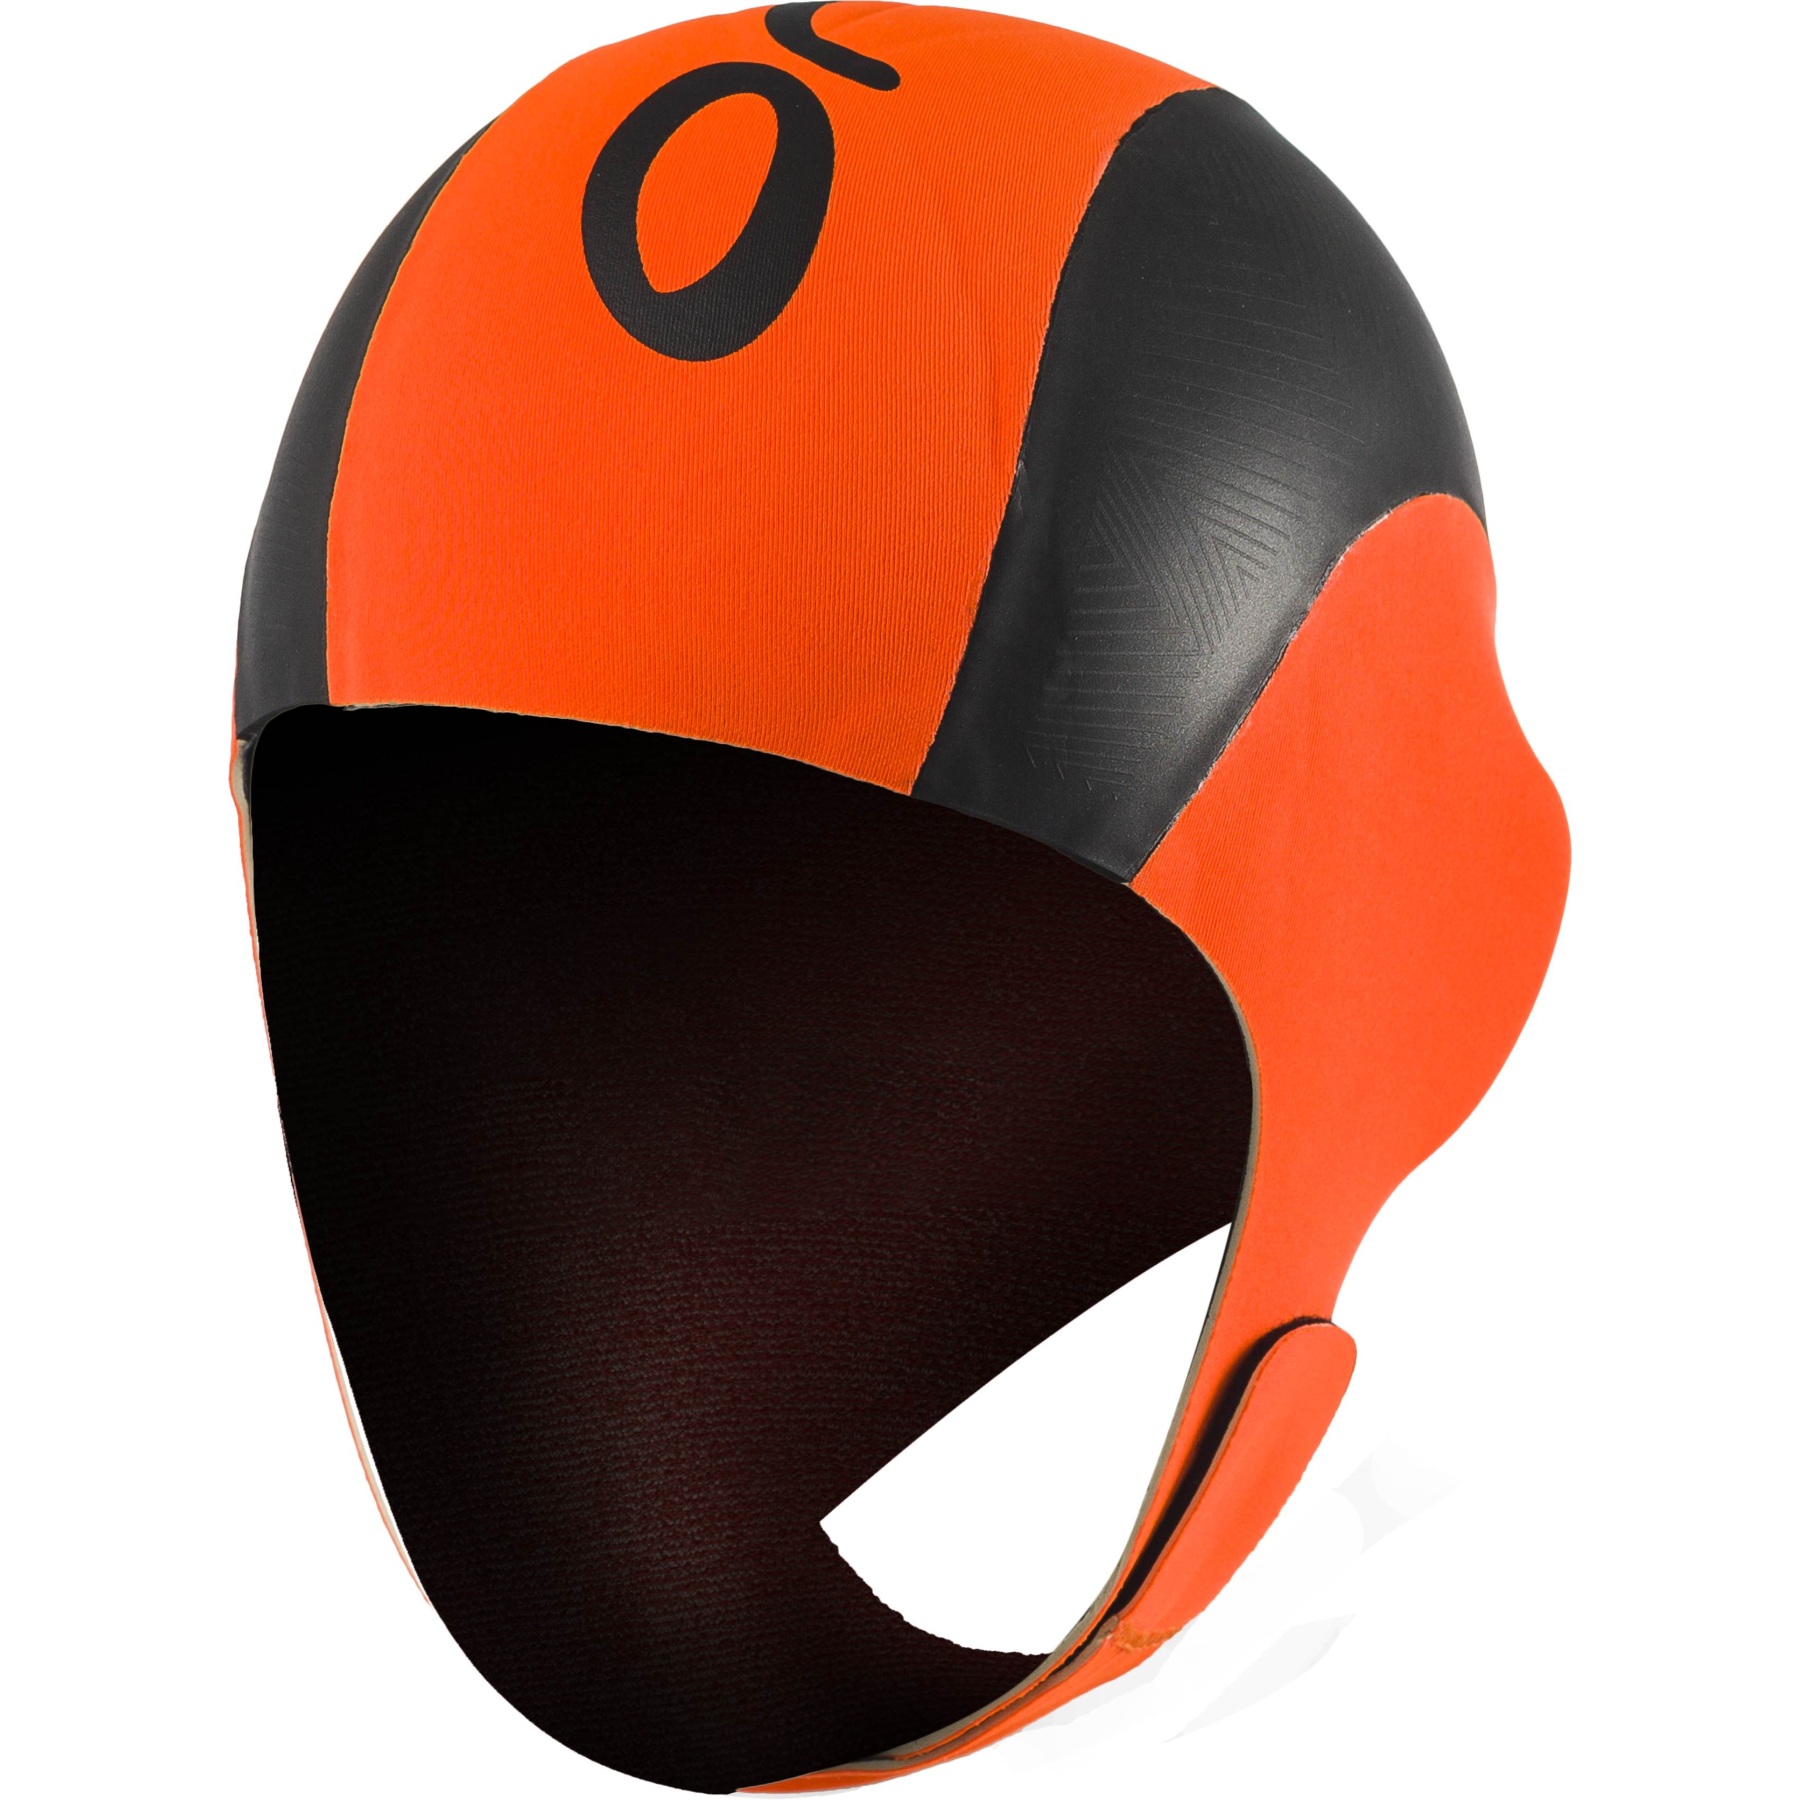 Produktbild von Orca High Visibility Neoprene Schwimmkappe - high vis orange